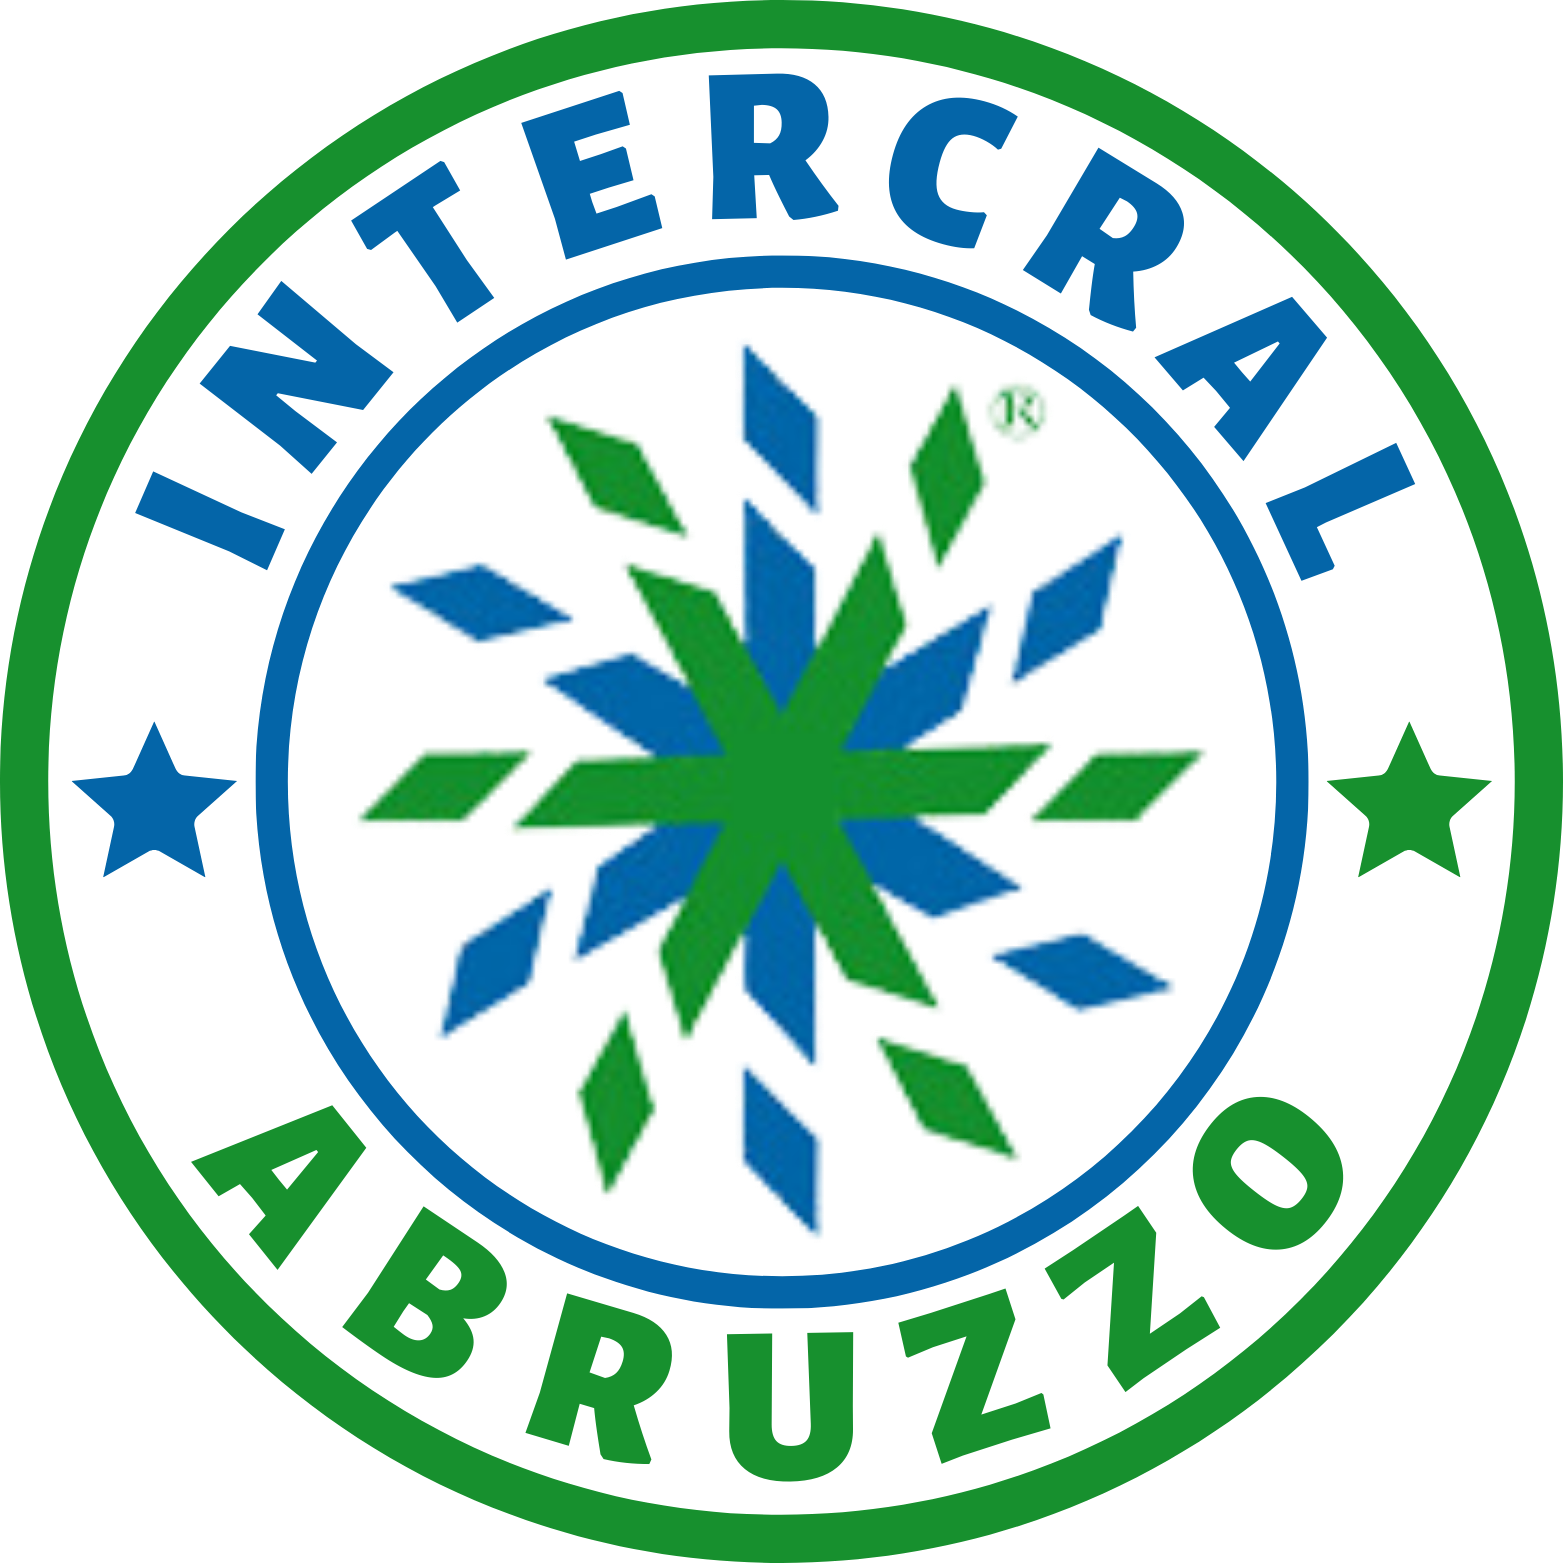 Intercral Abruzzo